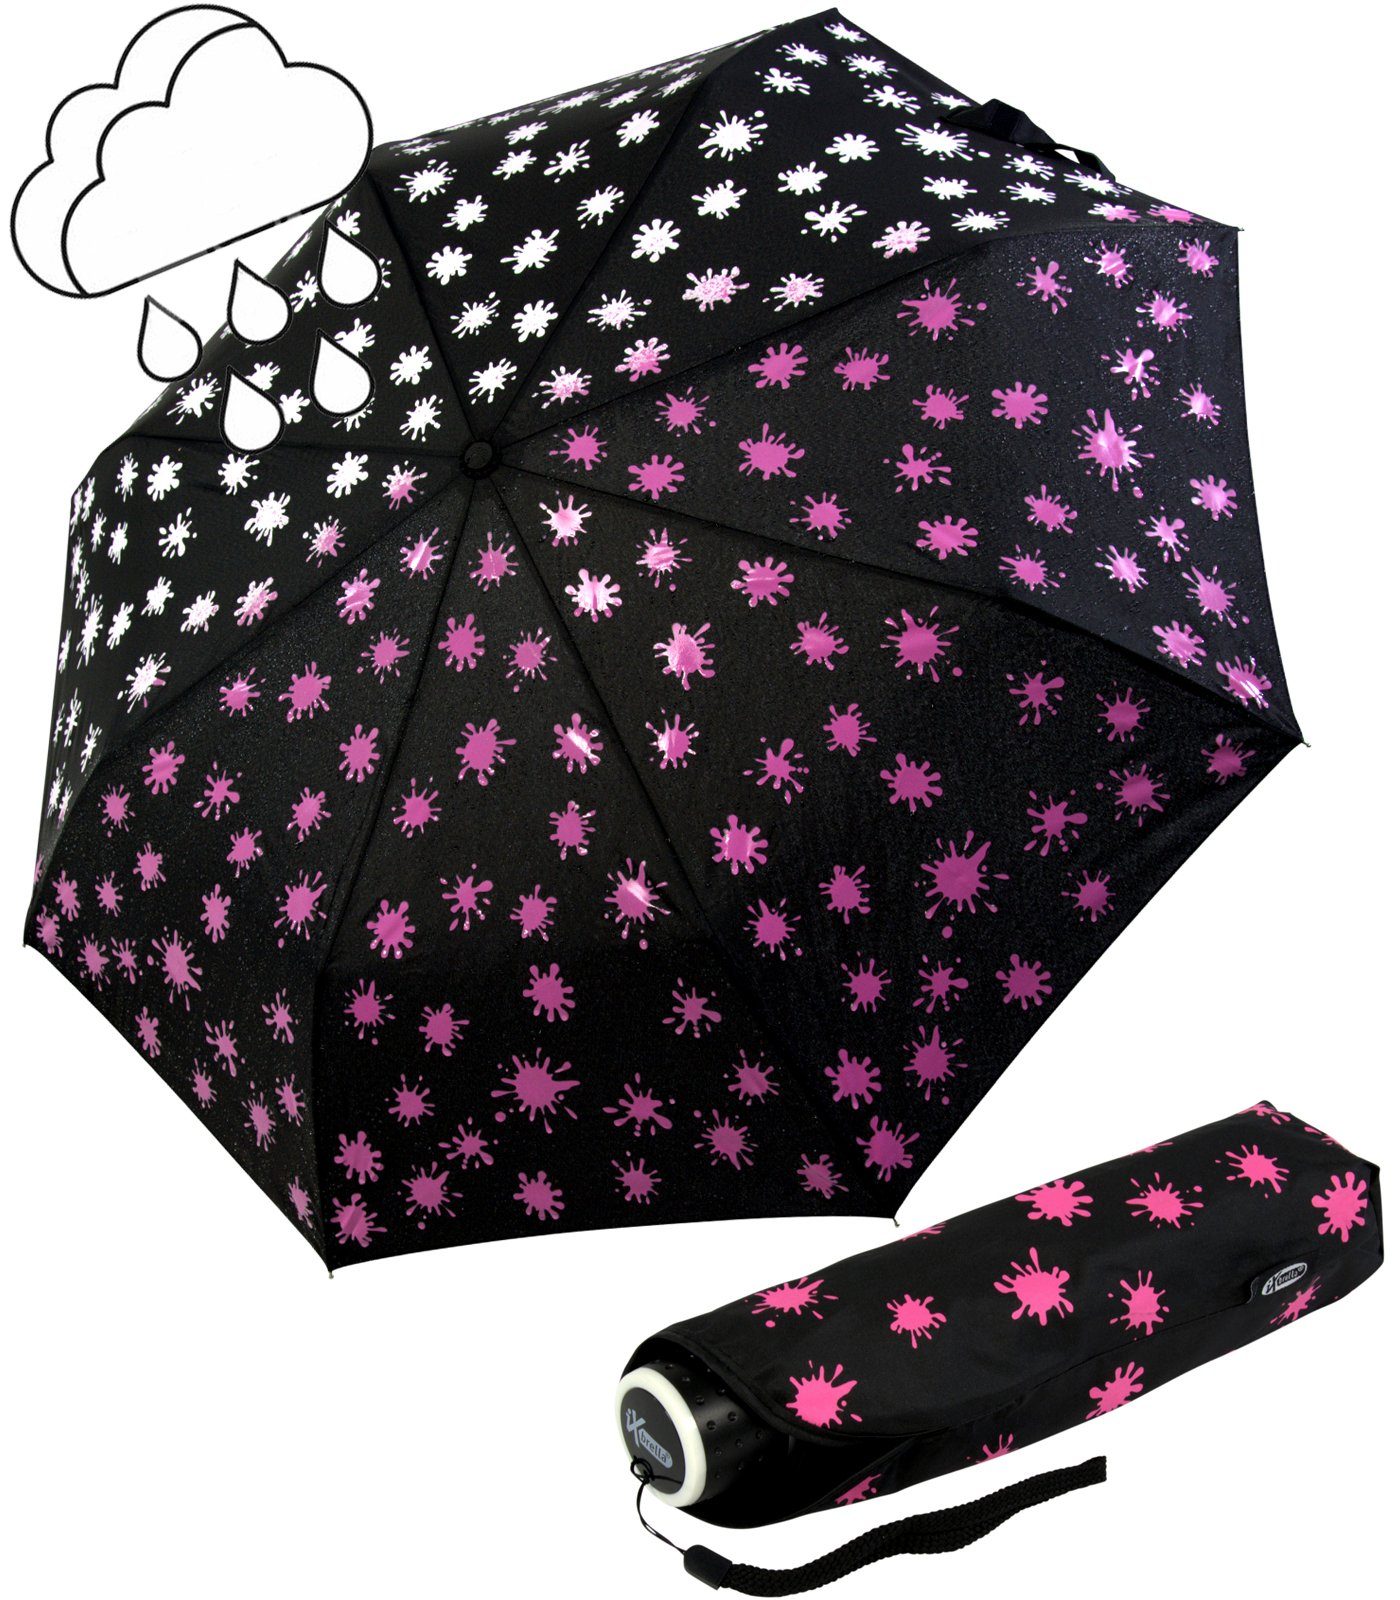 mit Dach großem Farbkleckse - extra - iX-brella Ultra Nässe leicht, - bei neon-pink Light Mini Farbänderung Taschenregenschirm